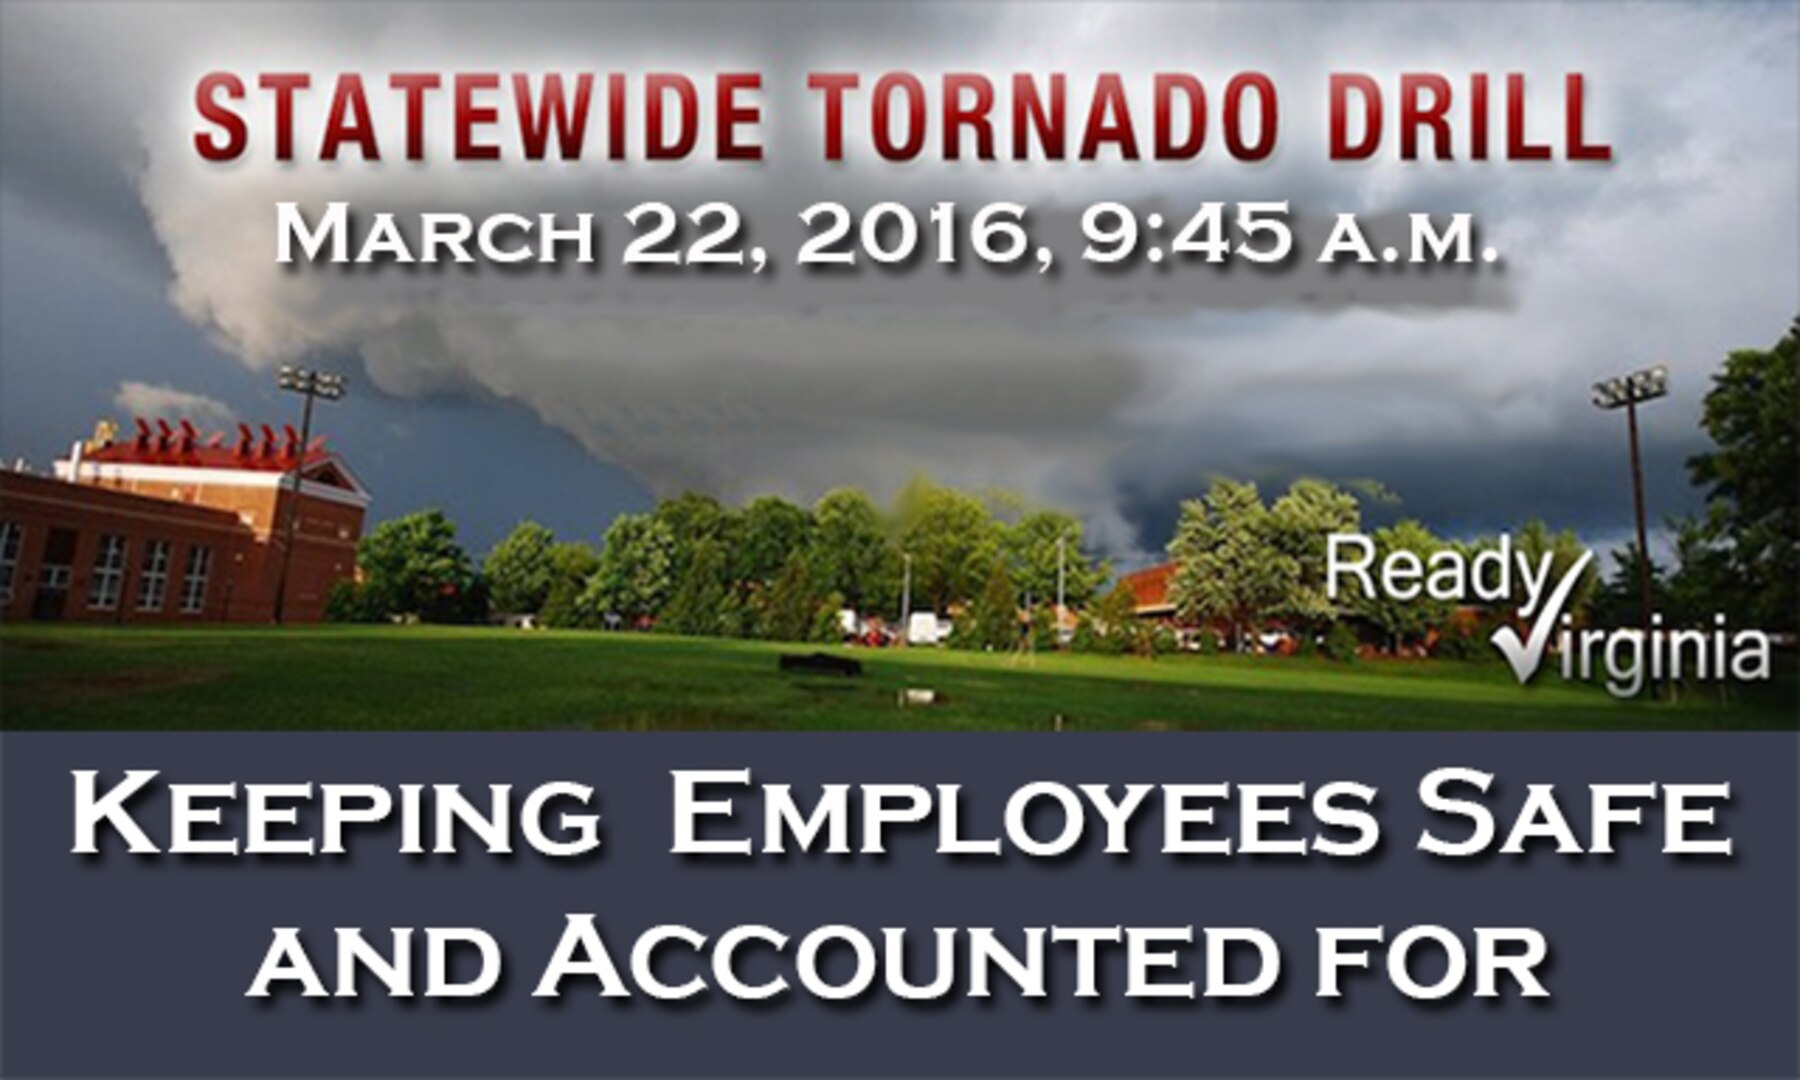 DSCR participates in statewide tornado drill March 22 > Defense